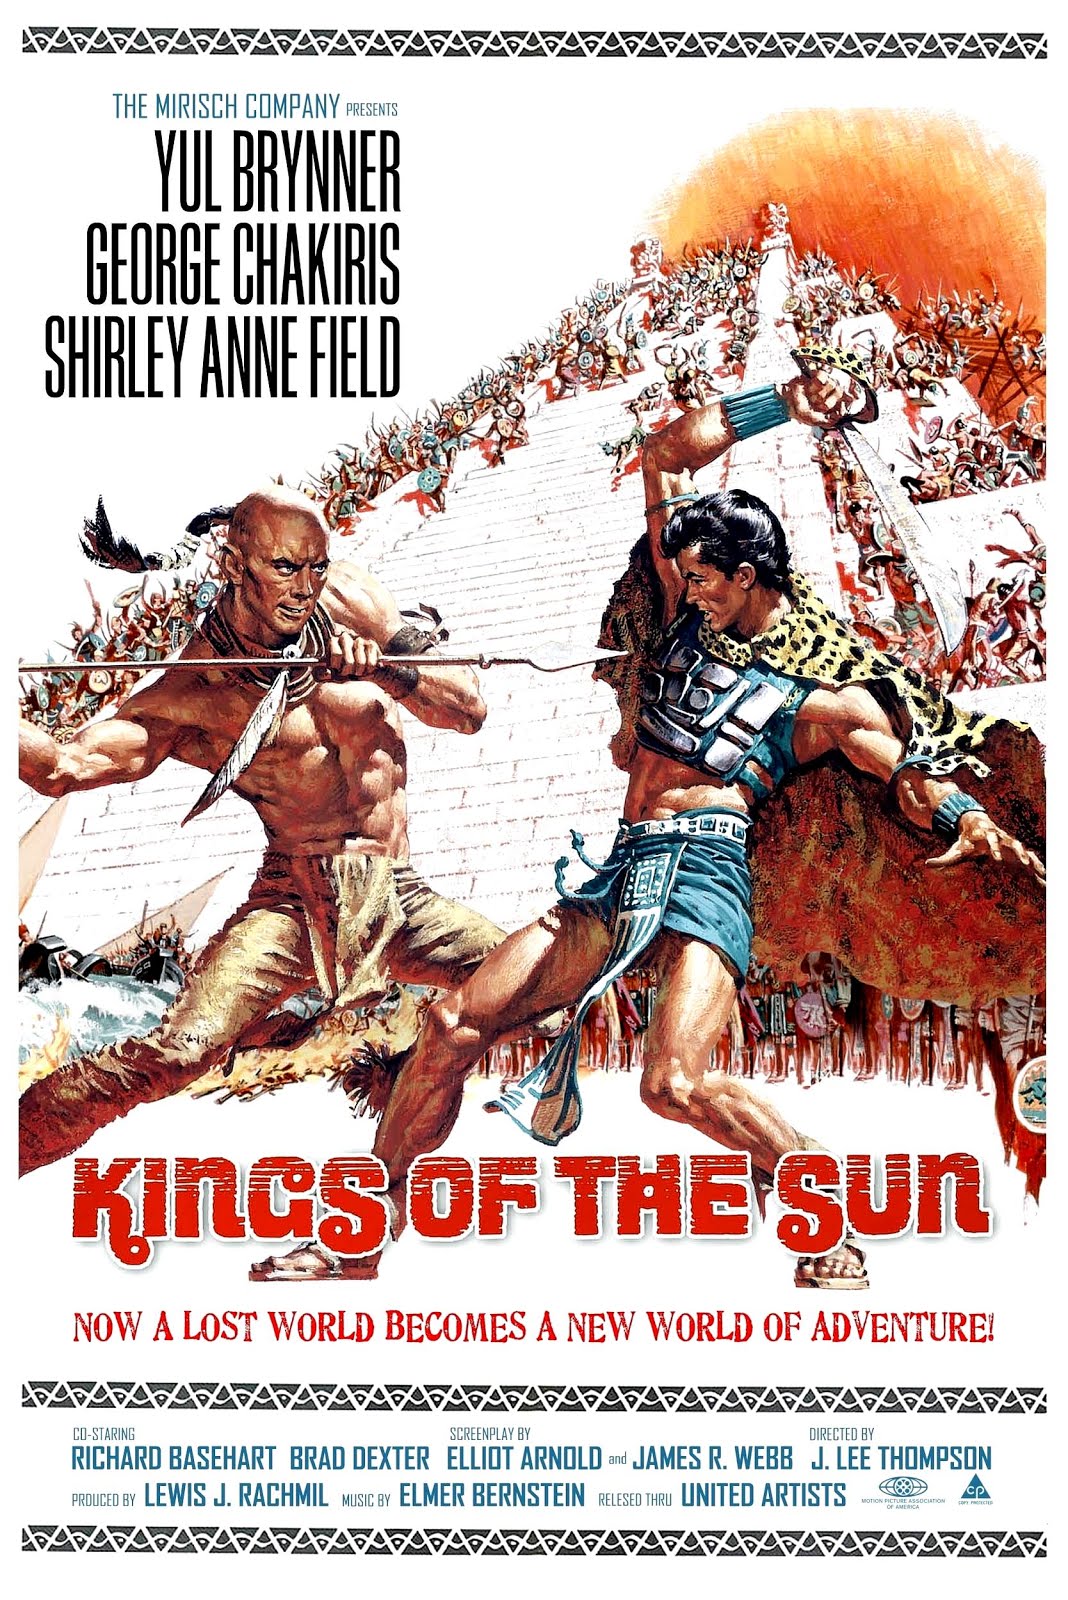 Les rois du soleil (1963) J. Lee Thompson - Kings of the sun (03.01.1963 / 05.04.1963)